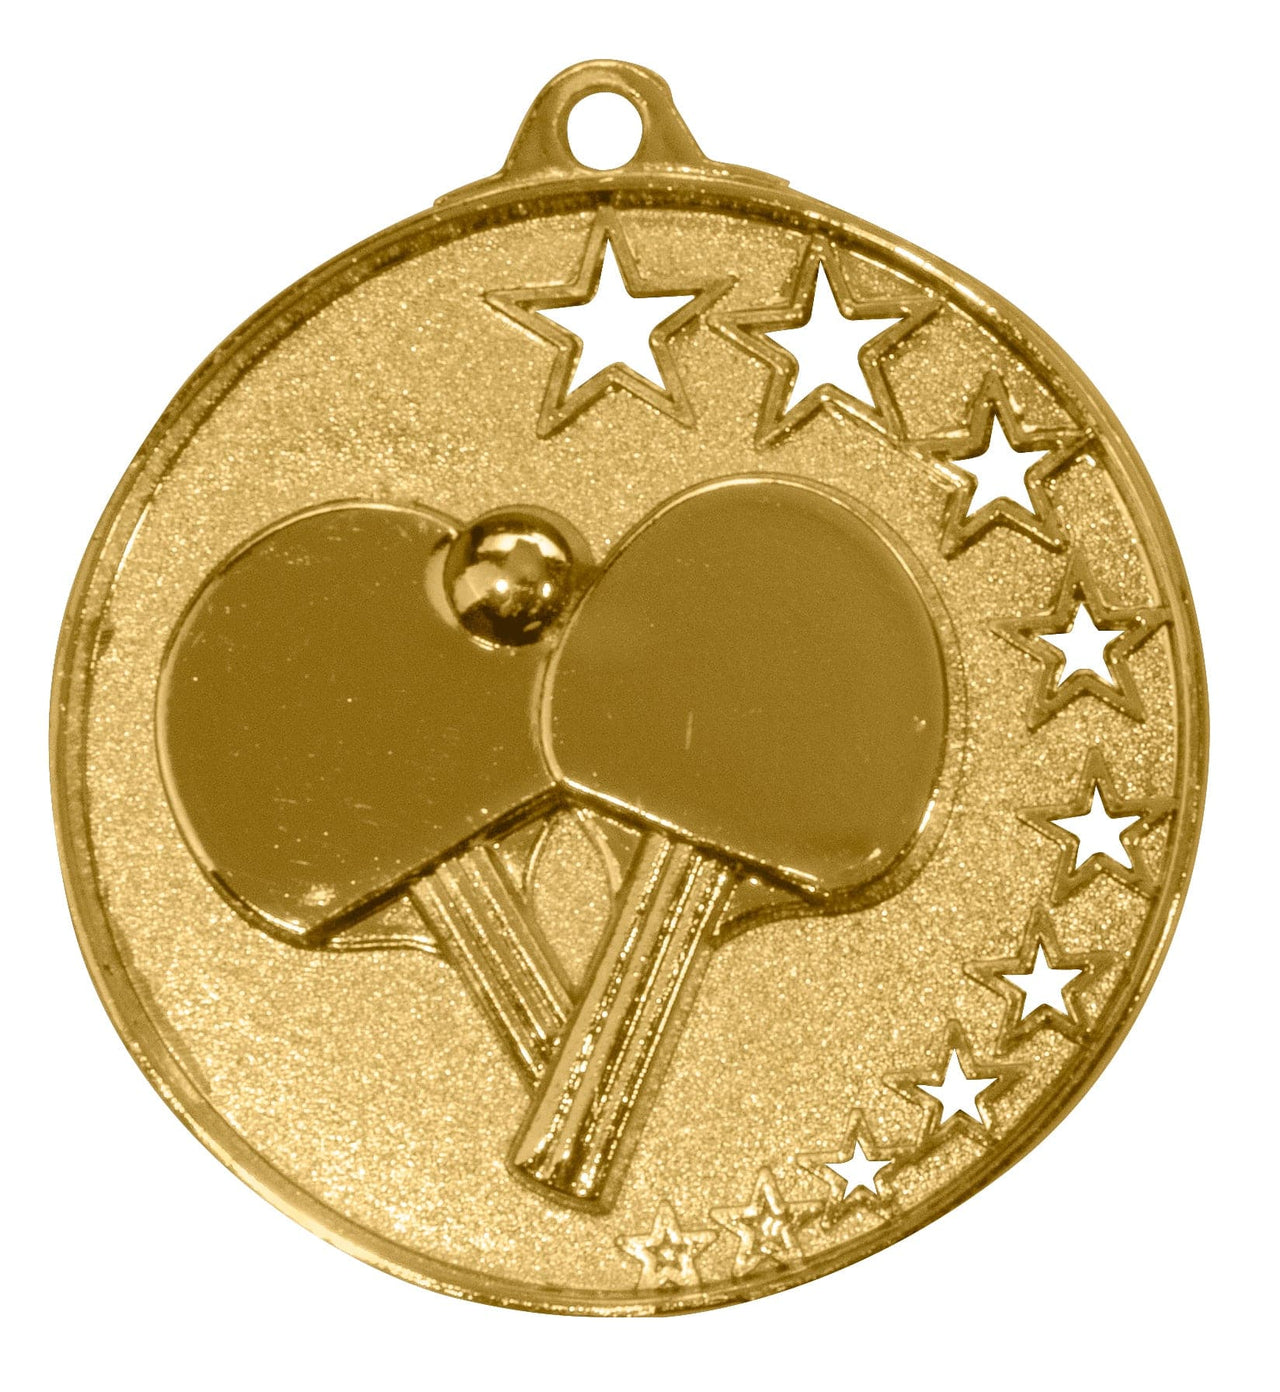 Goldmedaille mit Tischtennisschläger-Design und Sternen von POMEKI.